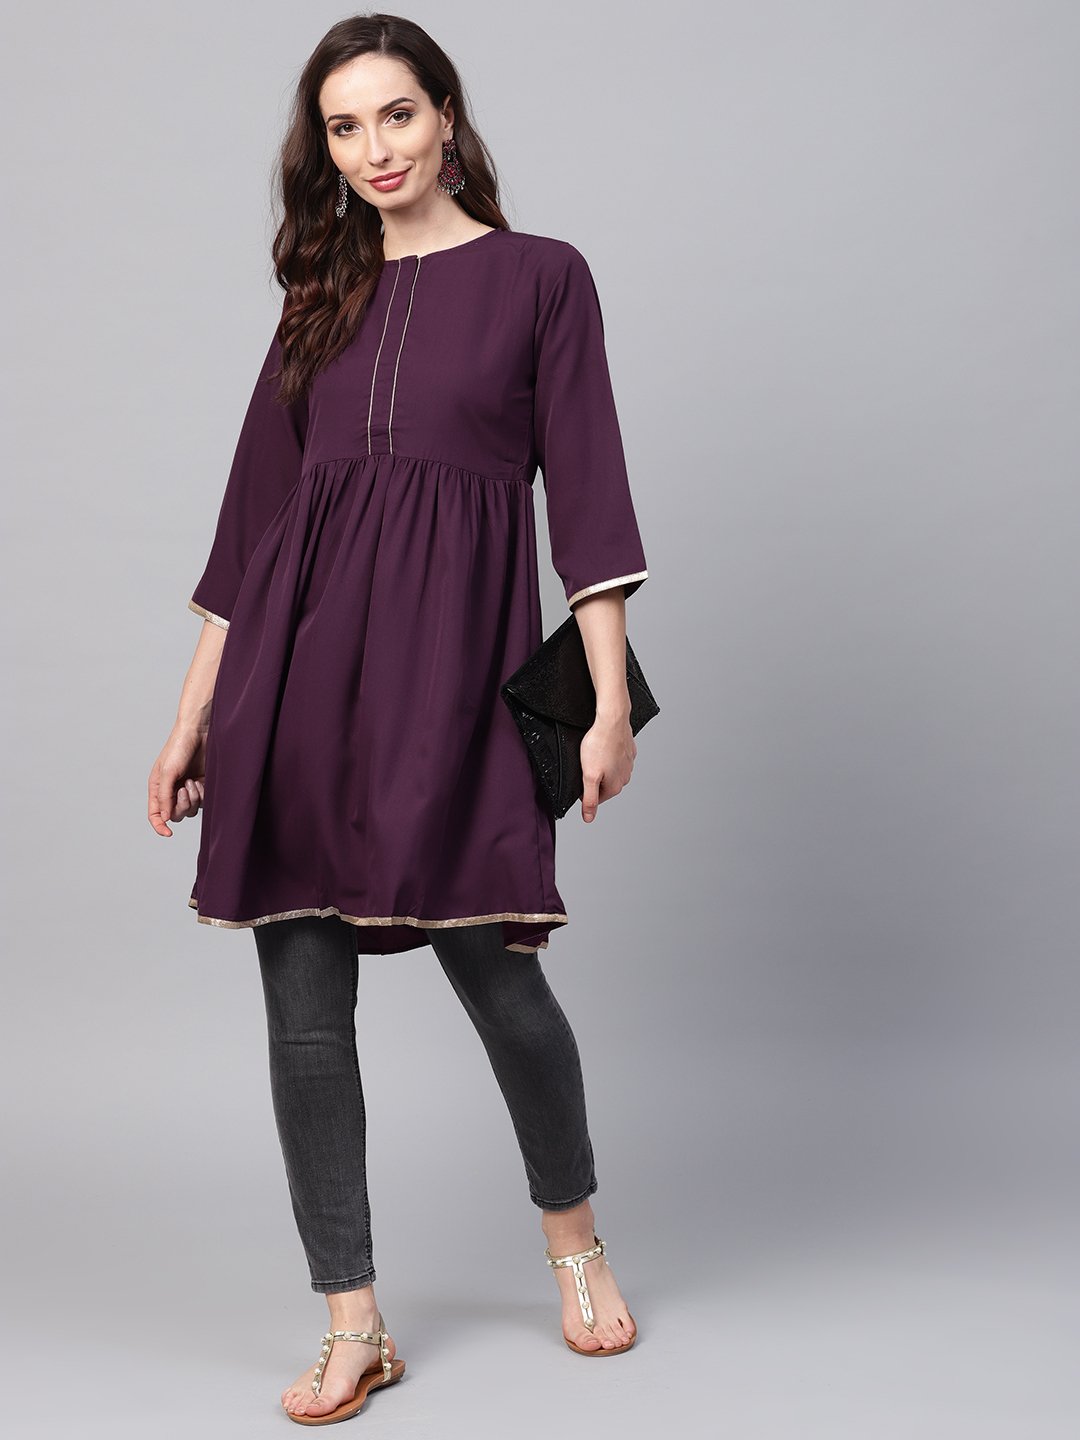 Women's Solid Burgundy Tunic Emblished With Gota & 3/4 Sleeves - Nayo Clothing